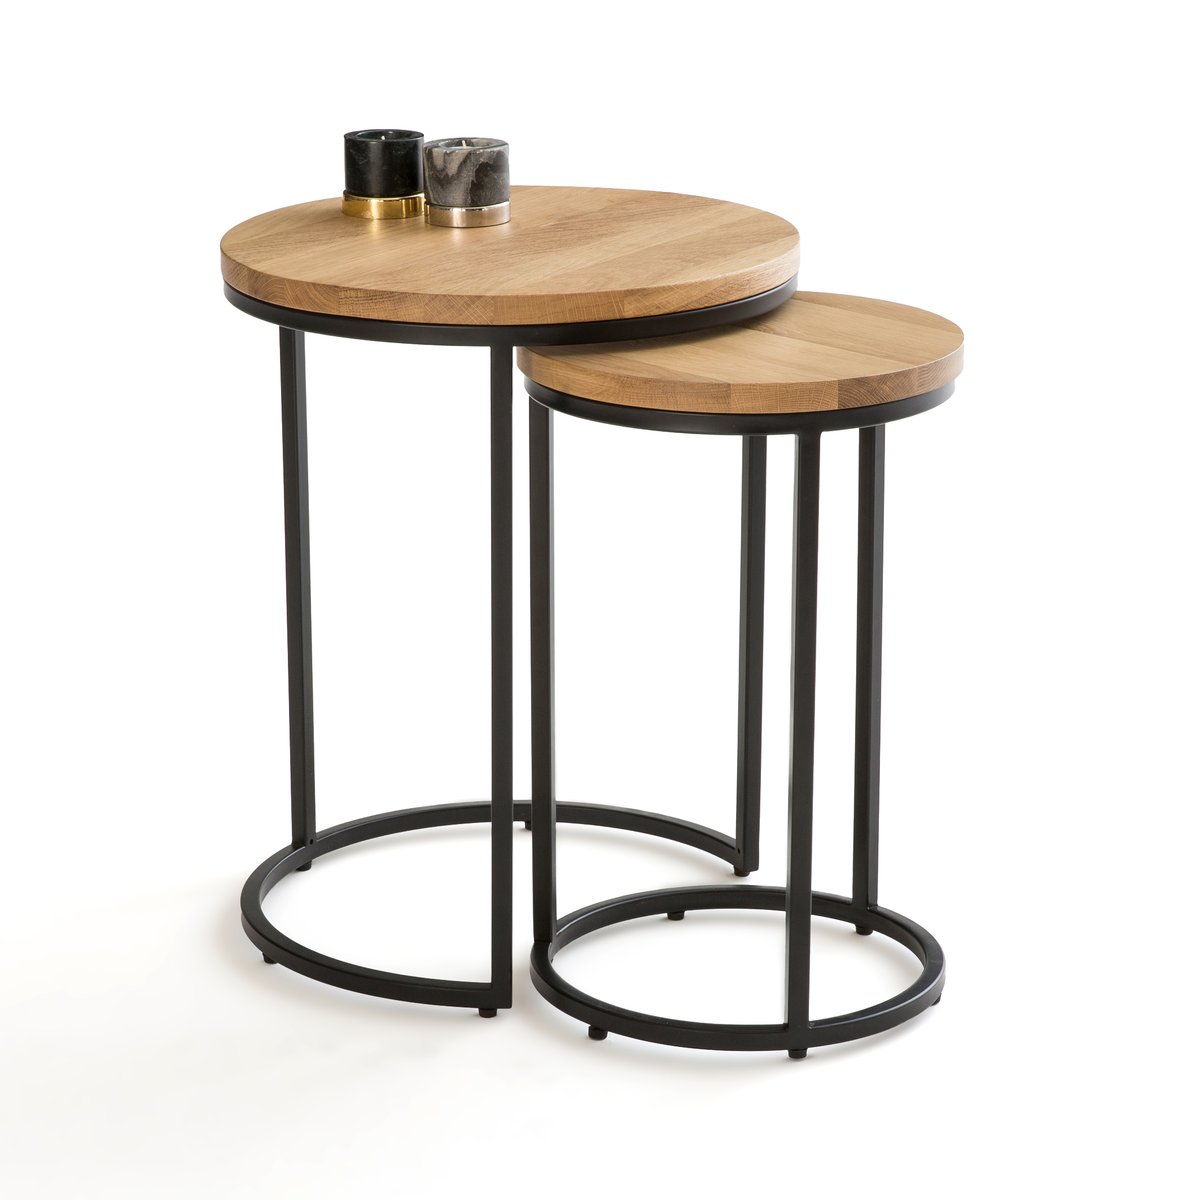 Круглый придиванный столик двойной комплект Vova единый размер каштановый столик laredoute столик круглый jimi единый размер белый